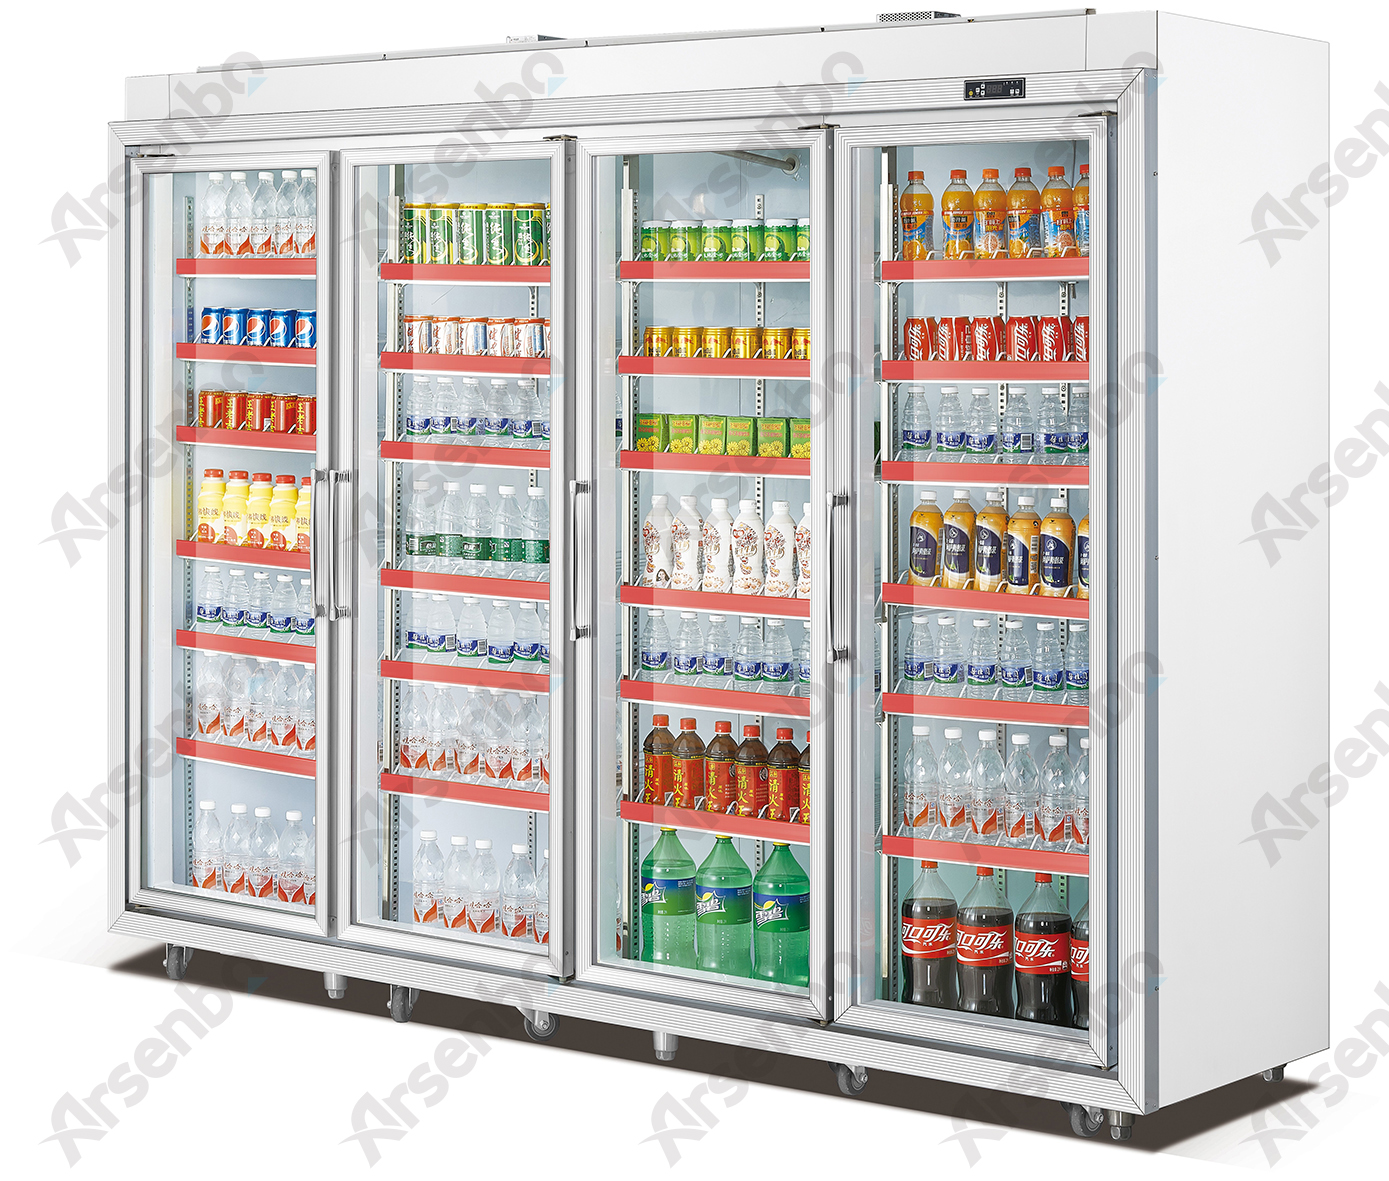 供应超市便利店可口可乐饮料展示冰冷柜